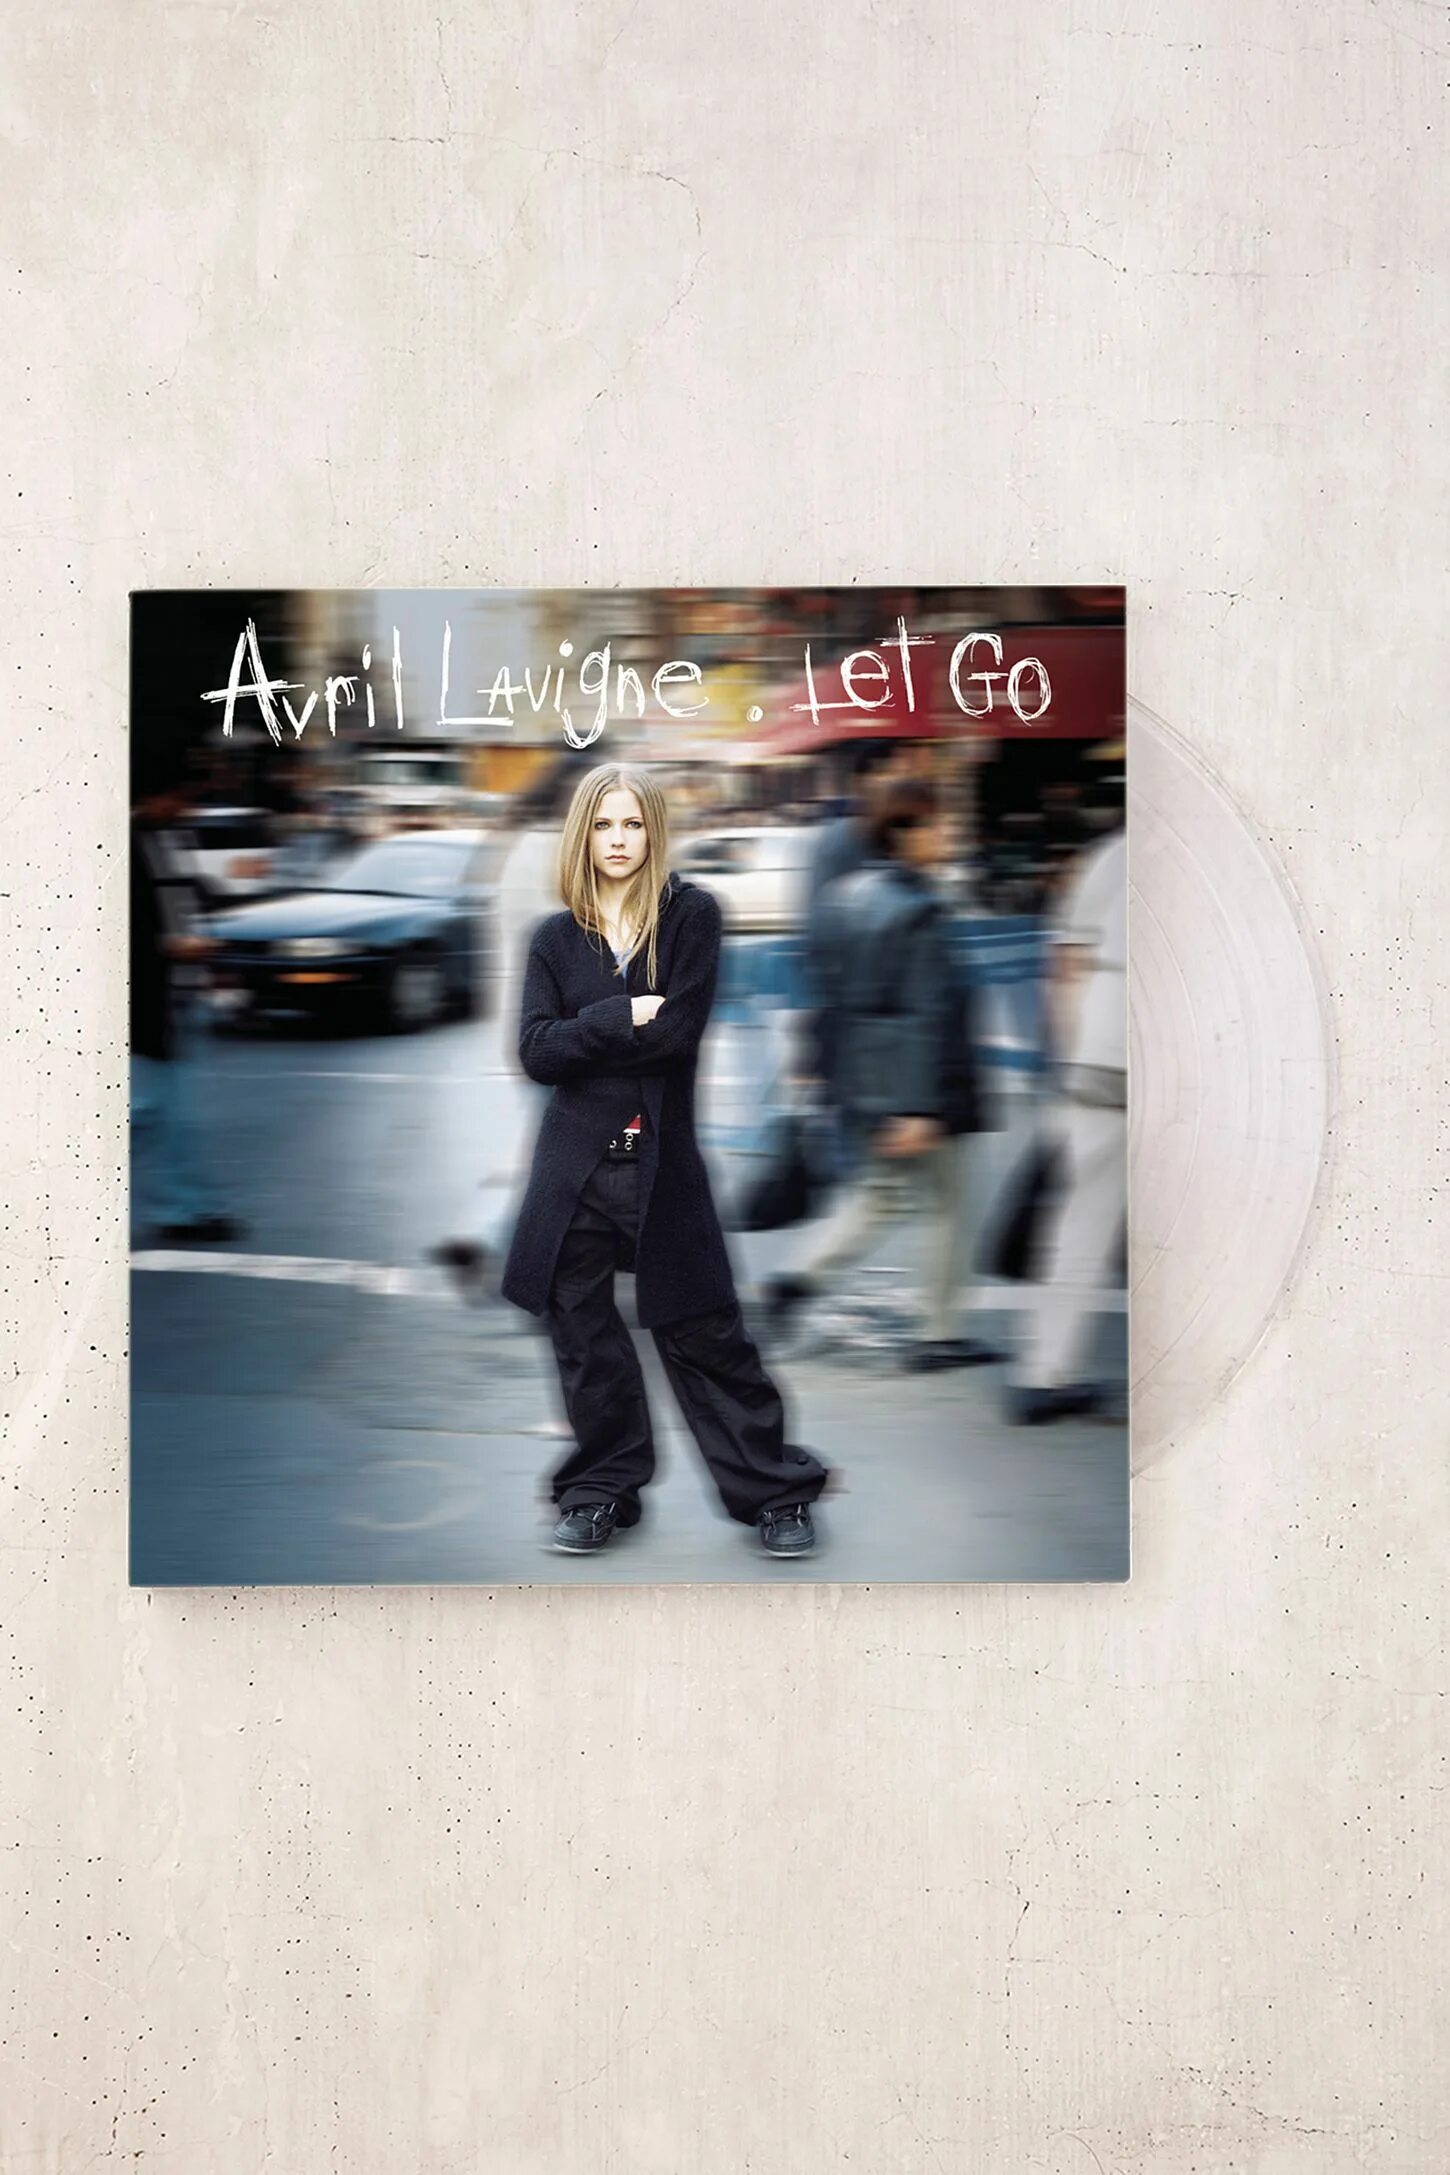 Avril lavigne let go. Avril Lavigne 2002 Let go. Avril Lavigne Let go album. Avril Lavigne Let go обложка альбома. Аврил Лавин альбомы 2002.